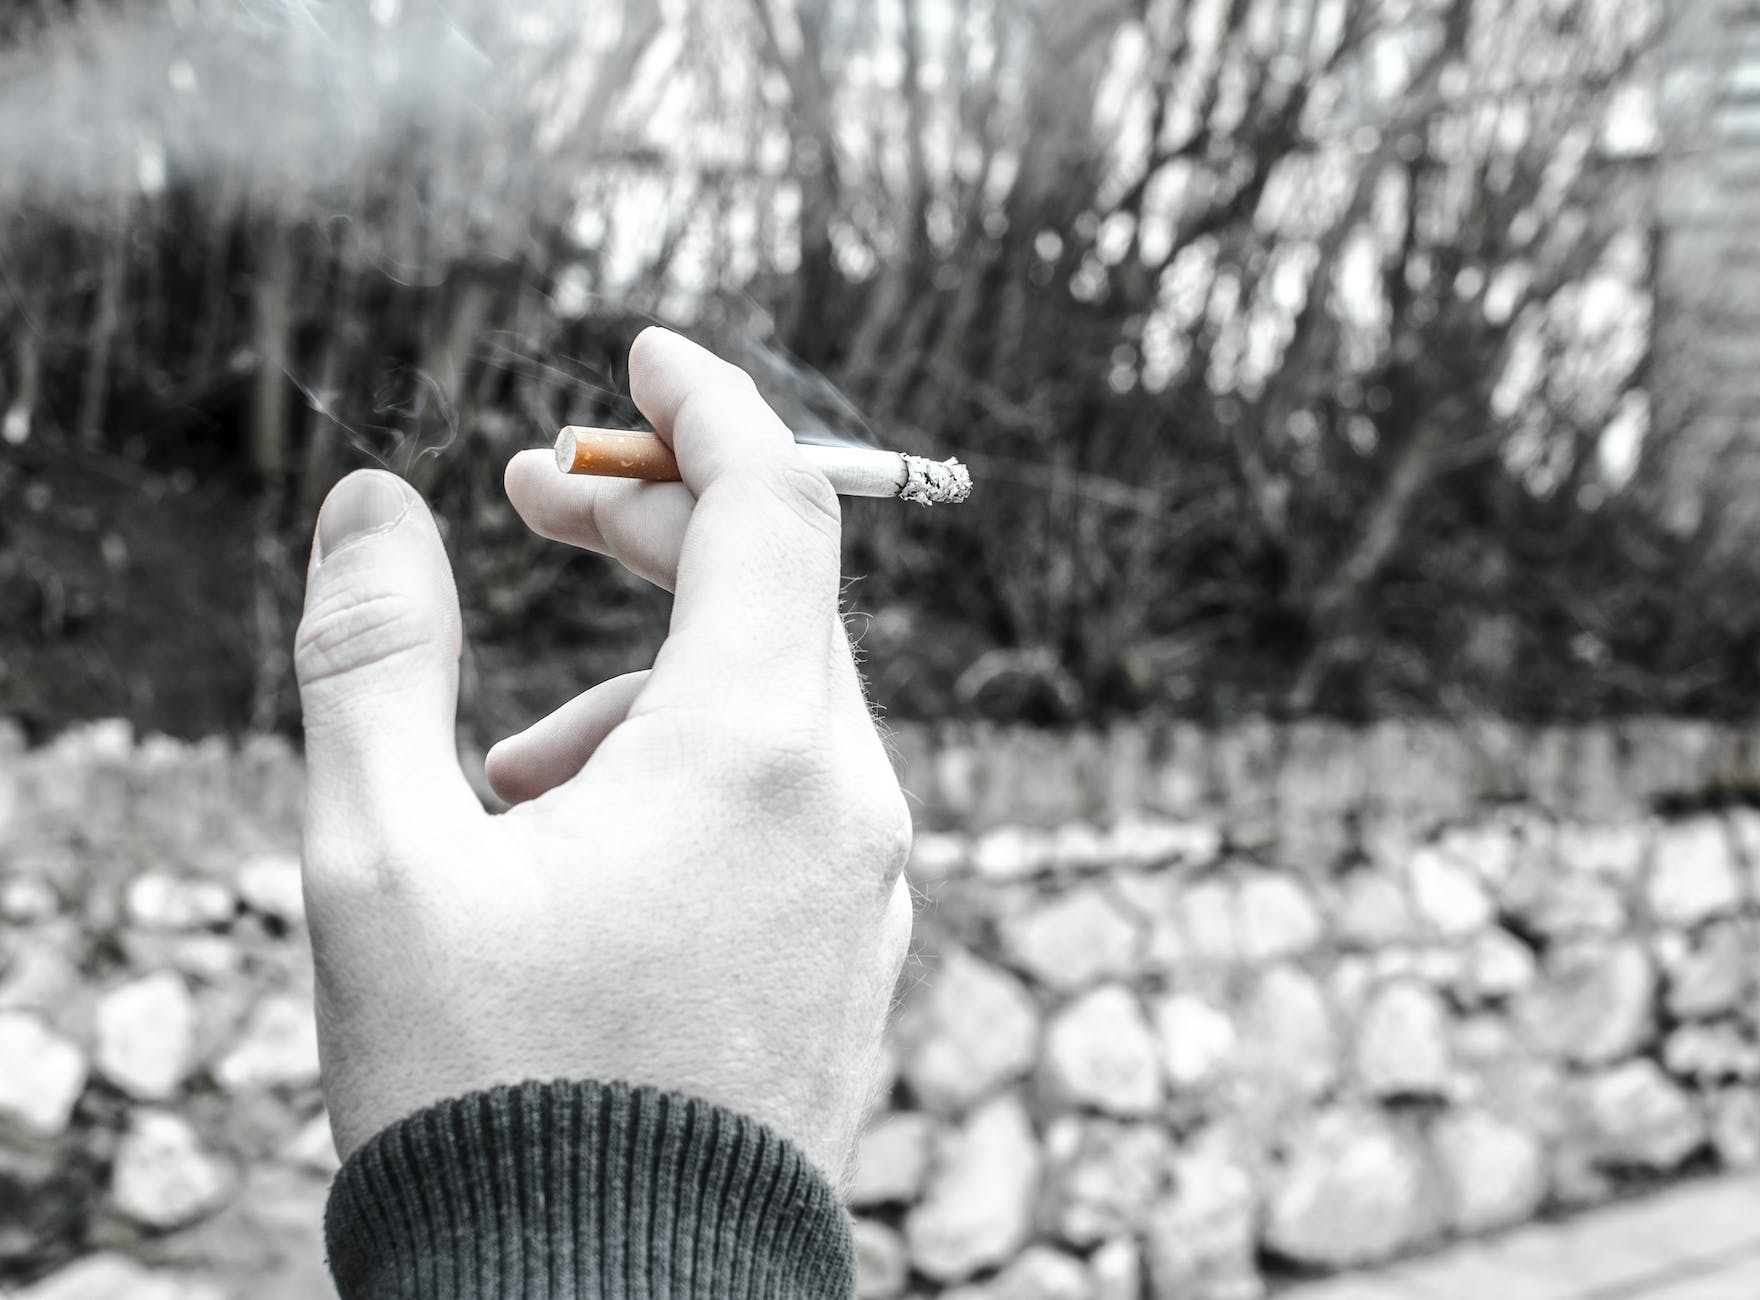 Las nuevas prohibiciones en el consumo de tabaco dan pie al mercado negro: Canacome